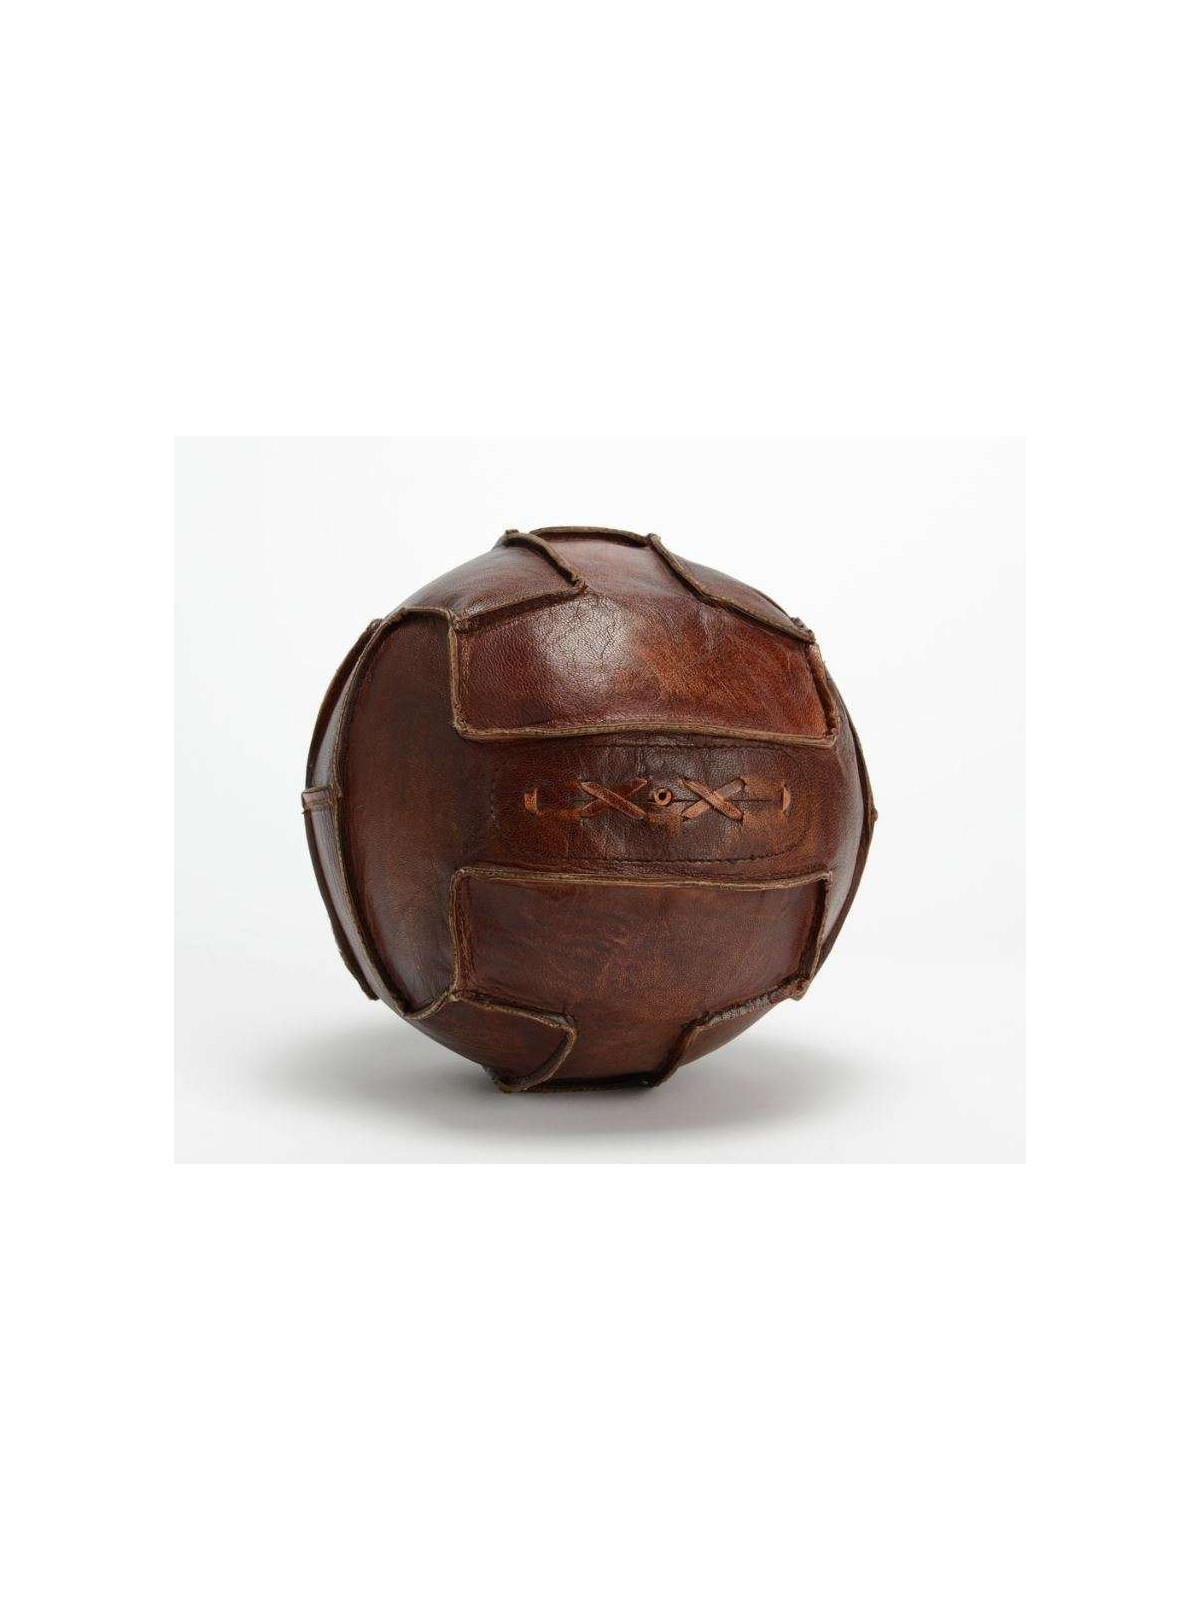 Ballon de foot vintage en cuir